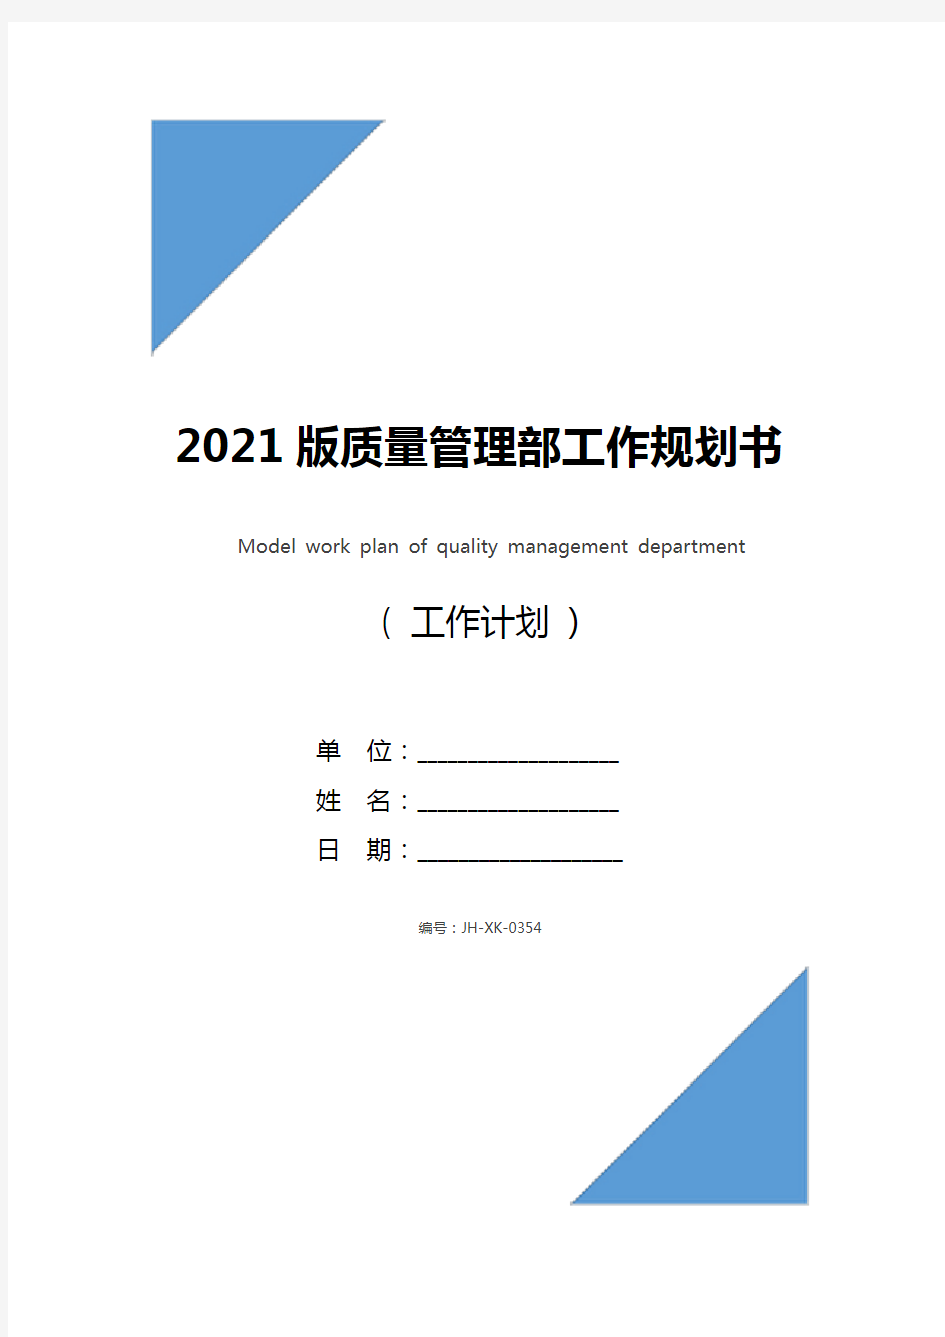 2021版质量管理部工作规划书范本